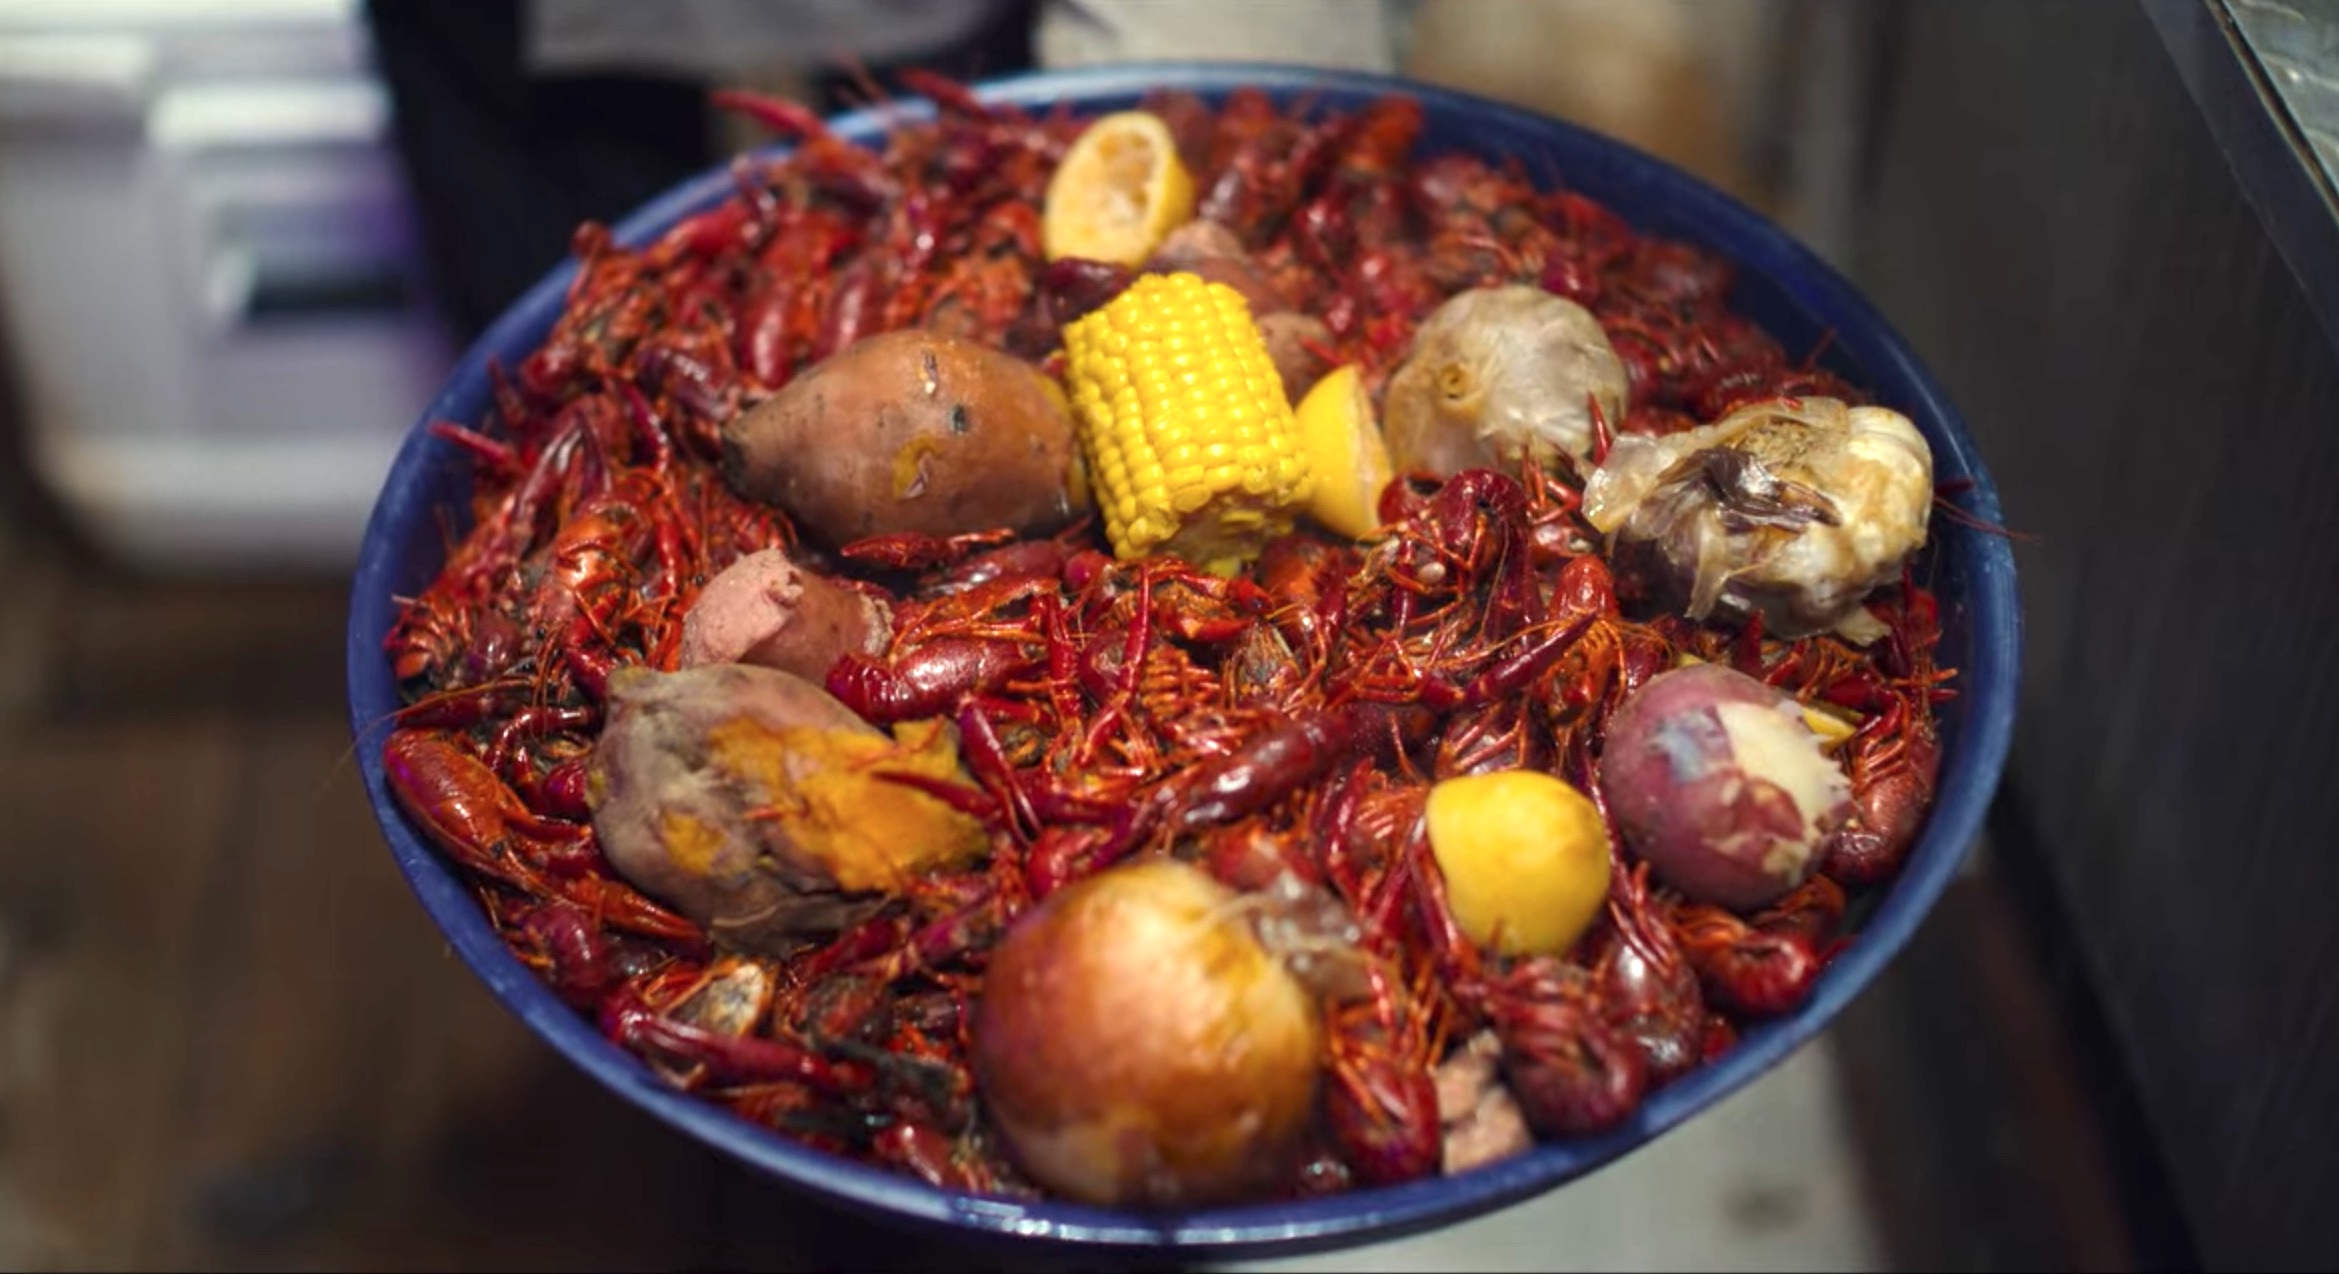 Streetfood: USA: New Orleans, Louisiana | Season 1 | Episode 4